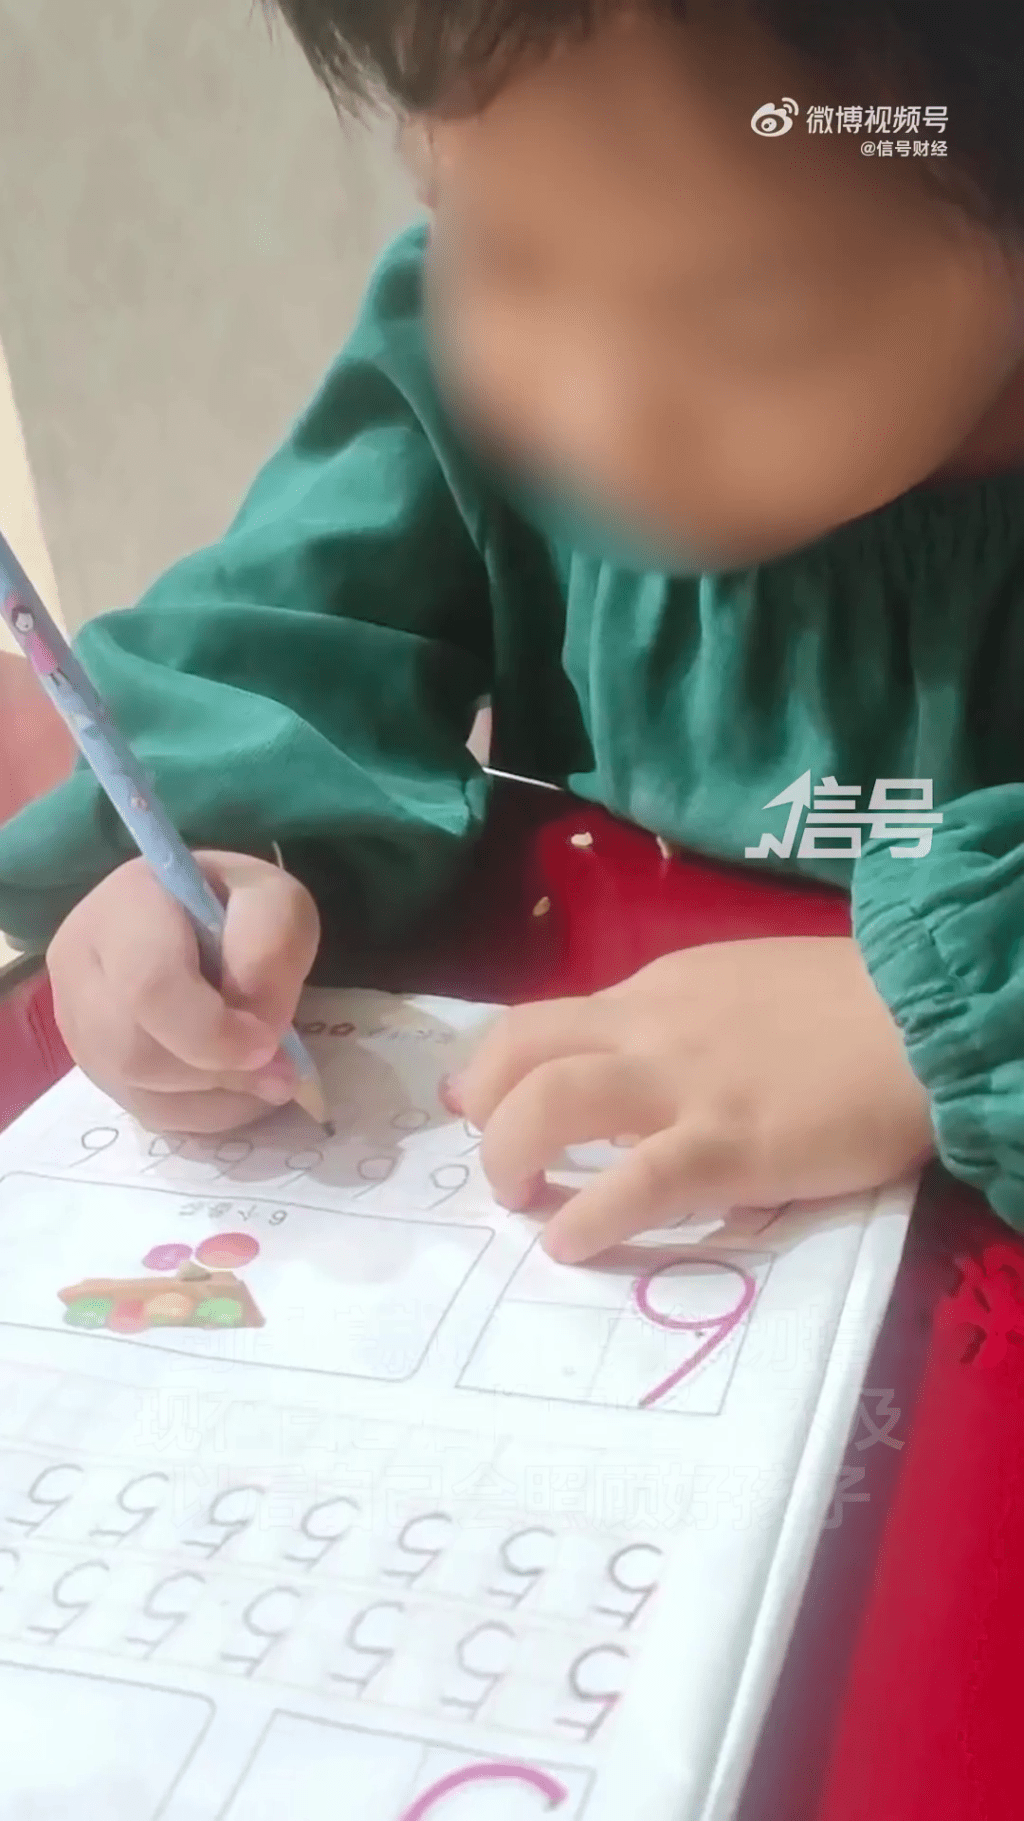 女童以後讀書寫字可能比正常人困難。